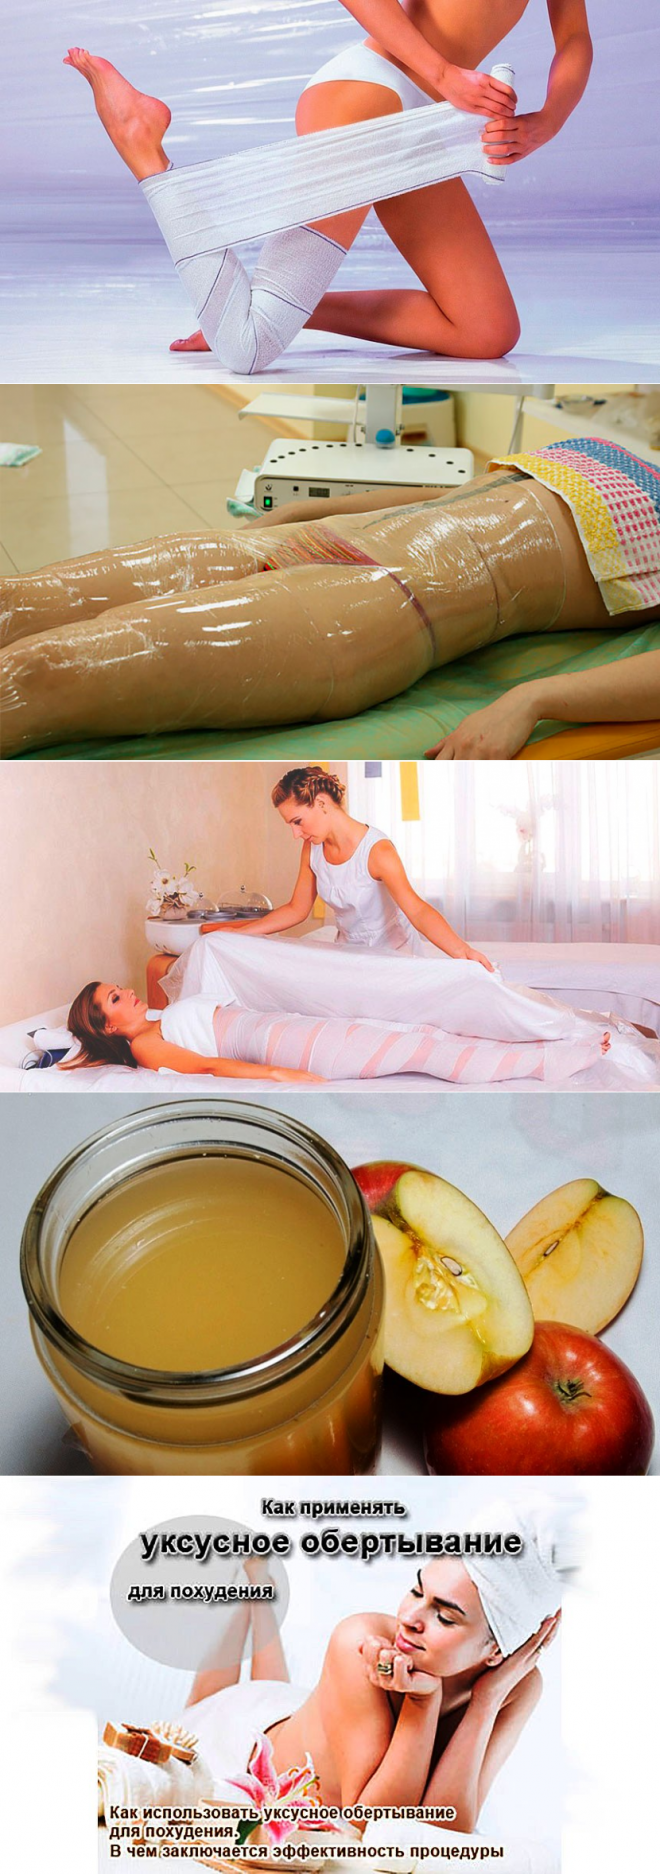 Эфирные масла для обертывания и для похудения | irksportmol.ru